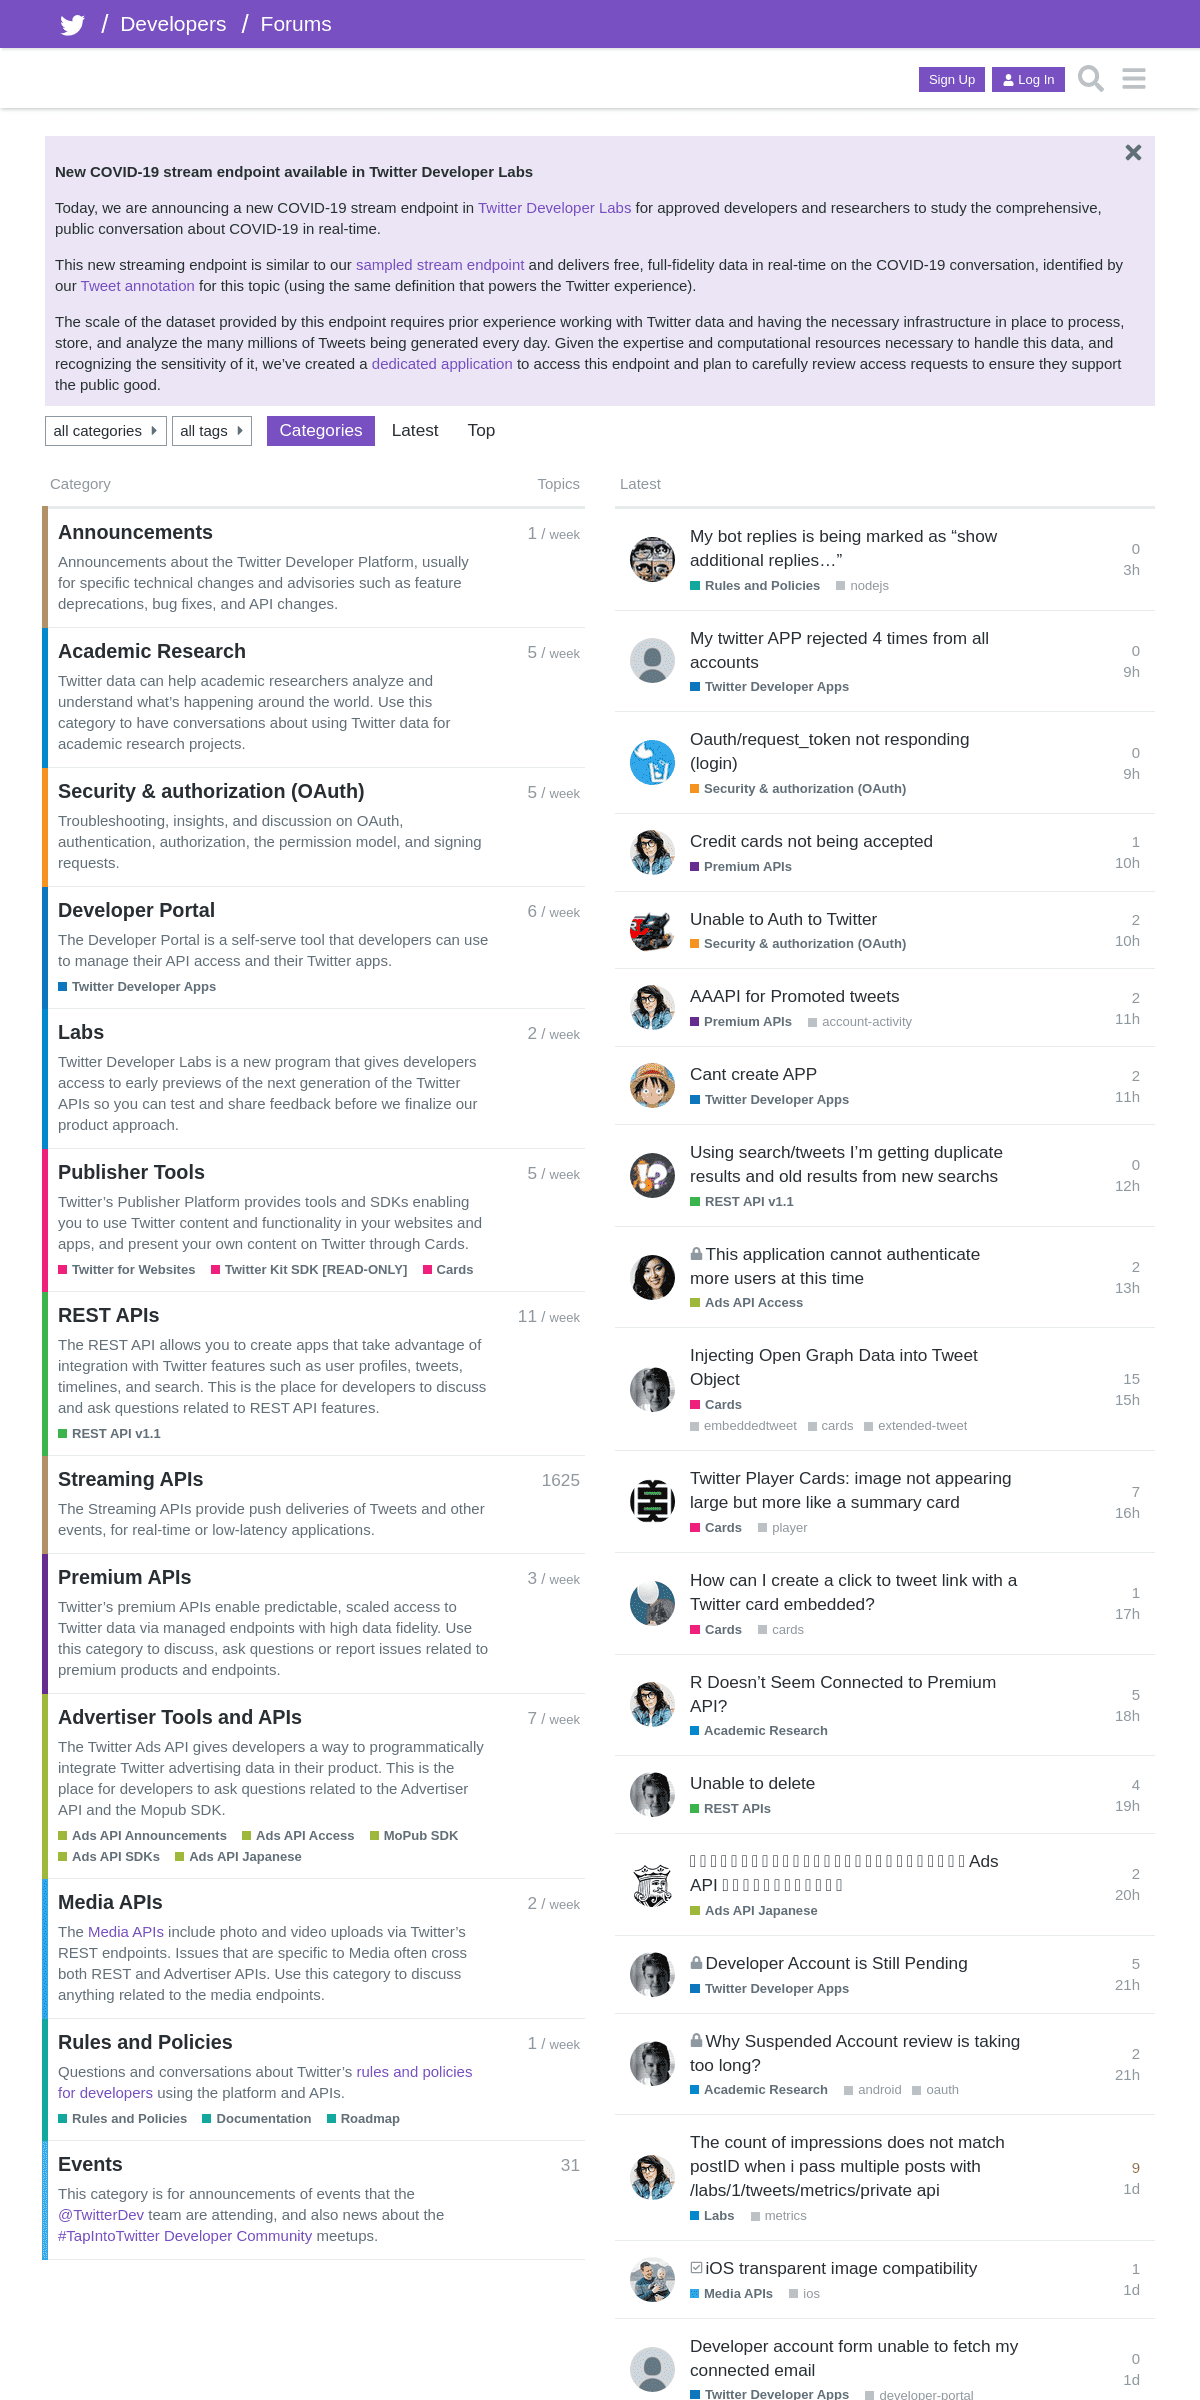 A complete backup of twittercommunity.com